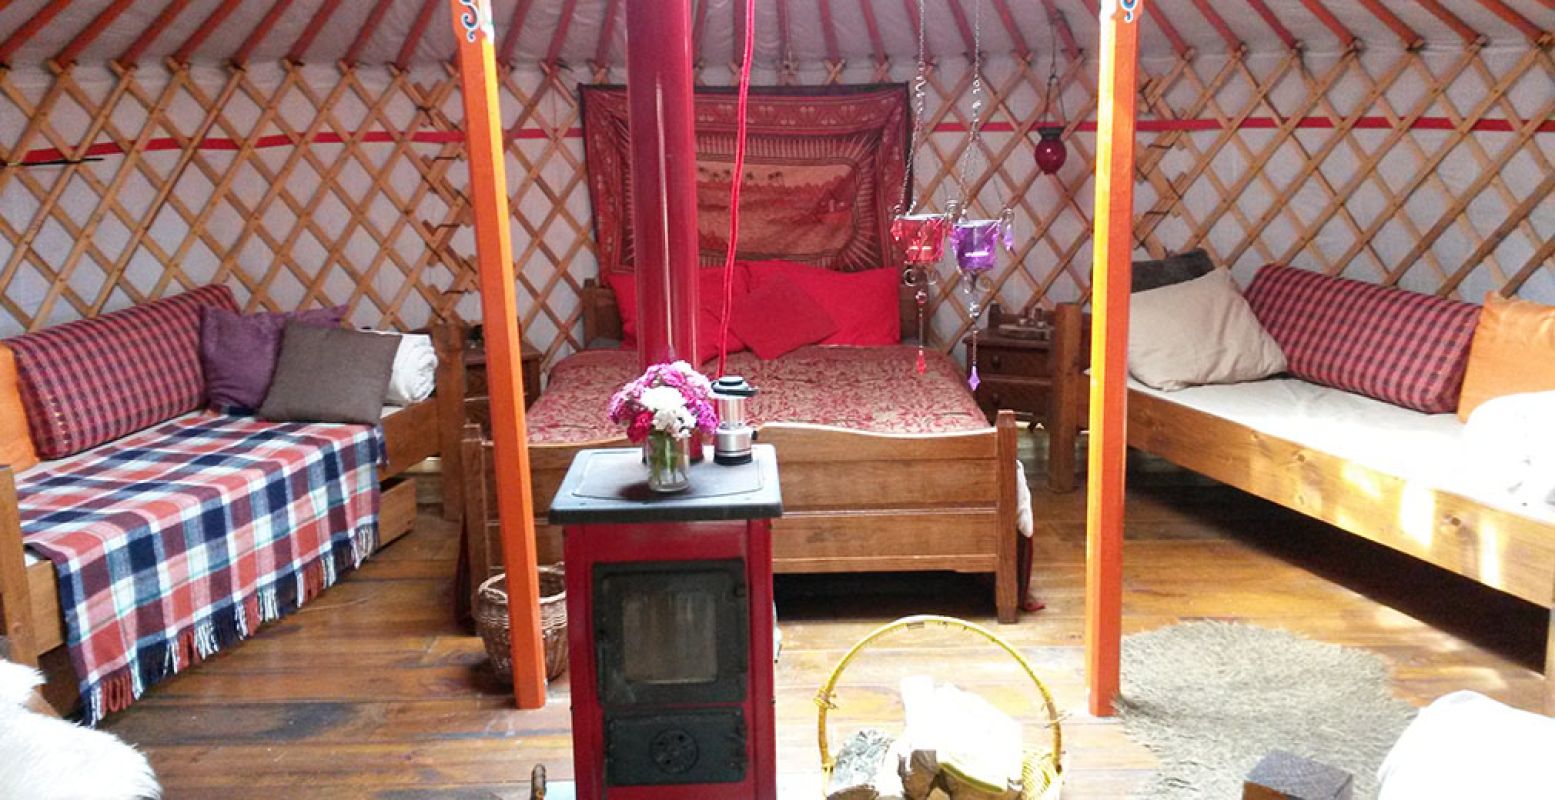 Slaap in een prachtige, handbeschilderde yurt en kook je potje buiten. Net als op de steppe. Foto: 't Buitenland